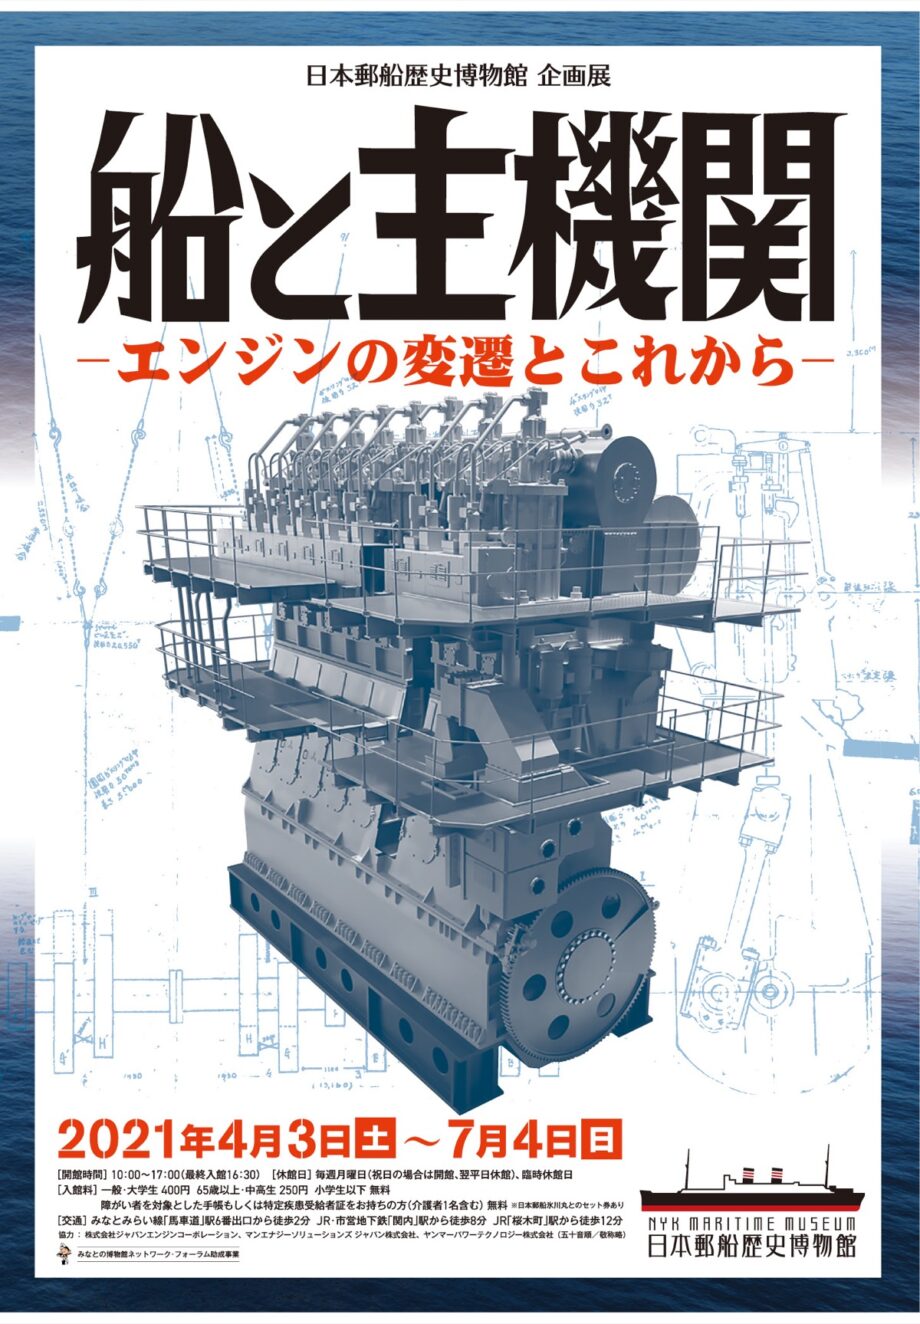 日本郵船歴史博物館 エンジンの歴史振り返る 企画展「船と主機関-エンジンの変遷とこれから-」４月３日から